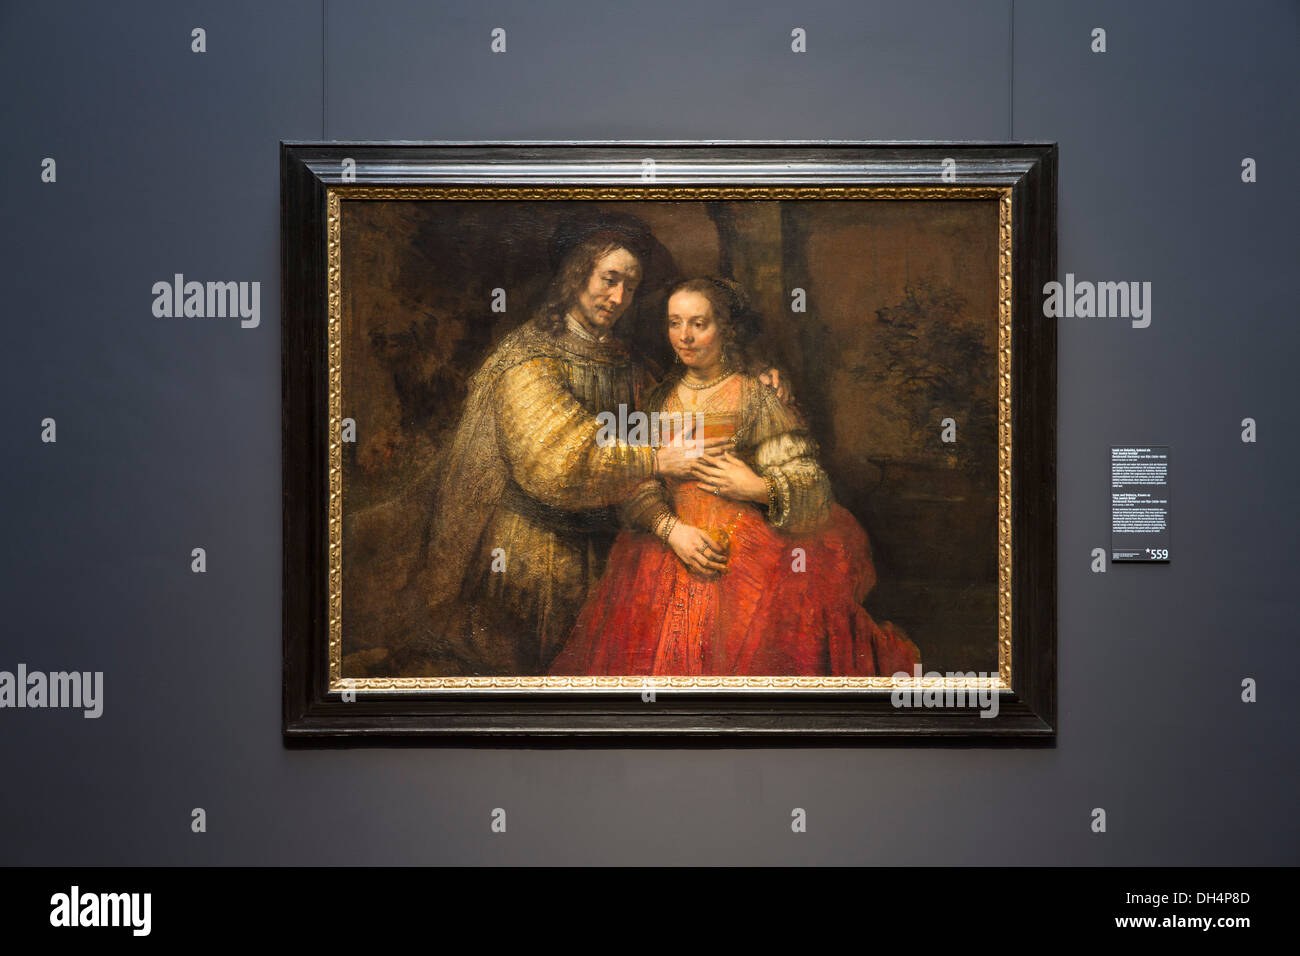 Países Bajos, Amsterdam, Rijksmuseum. Isaac y Rebecca, nombre popular, la Novia judía de Rembrandt van Rijn, ca. 1665 - ca. 1669 Foto de stock